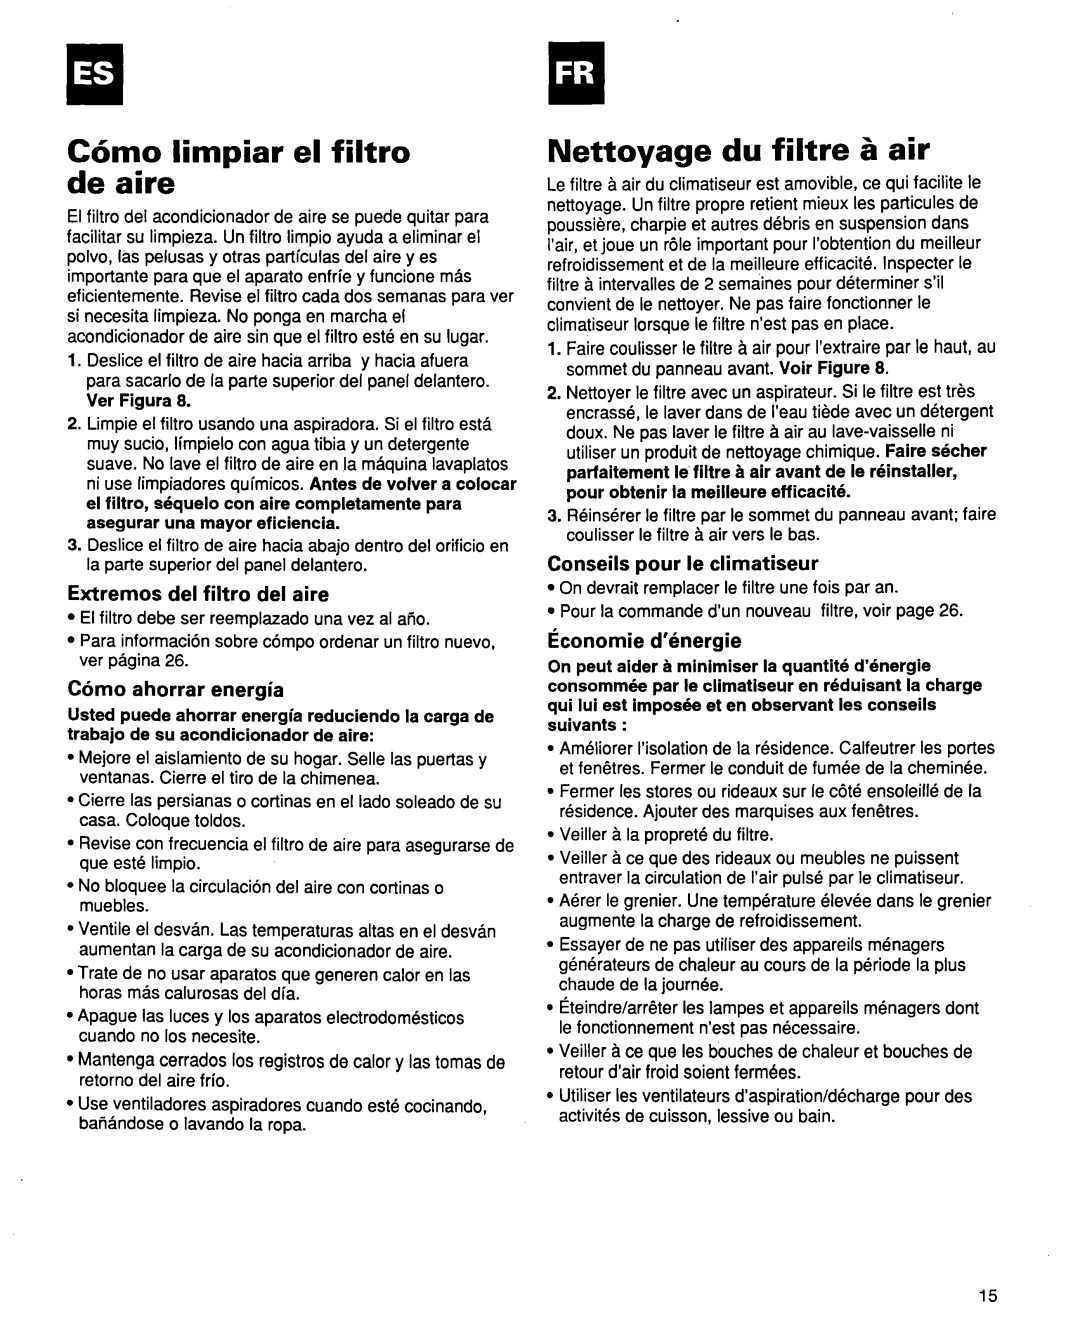 Whirlpool ACQ254XF0 manual C6mo limpiar el filtro de aire, Nettoyage du filtre 5 air, Extremos del filtro del aire 